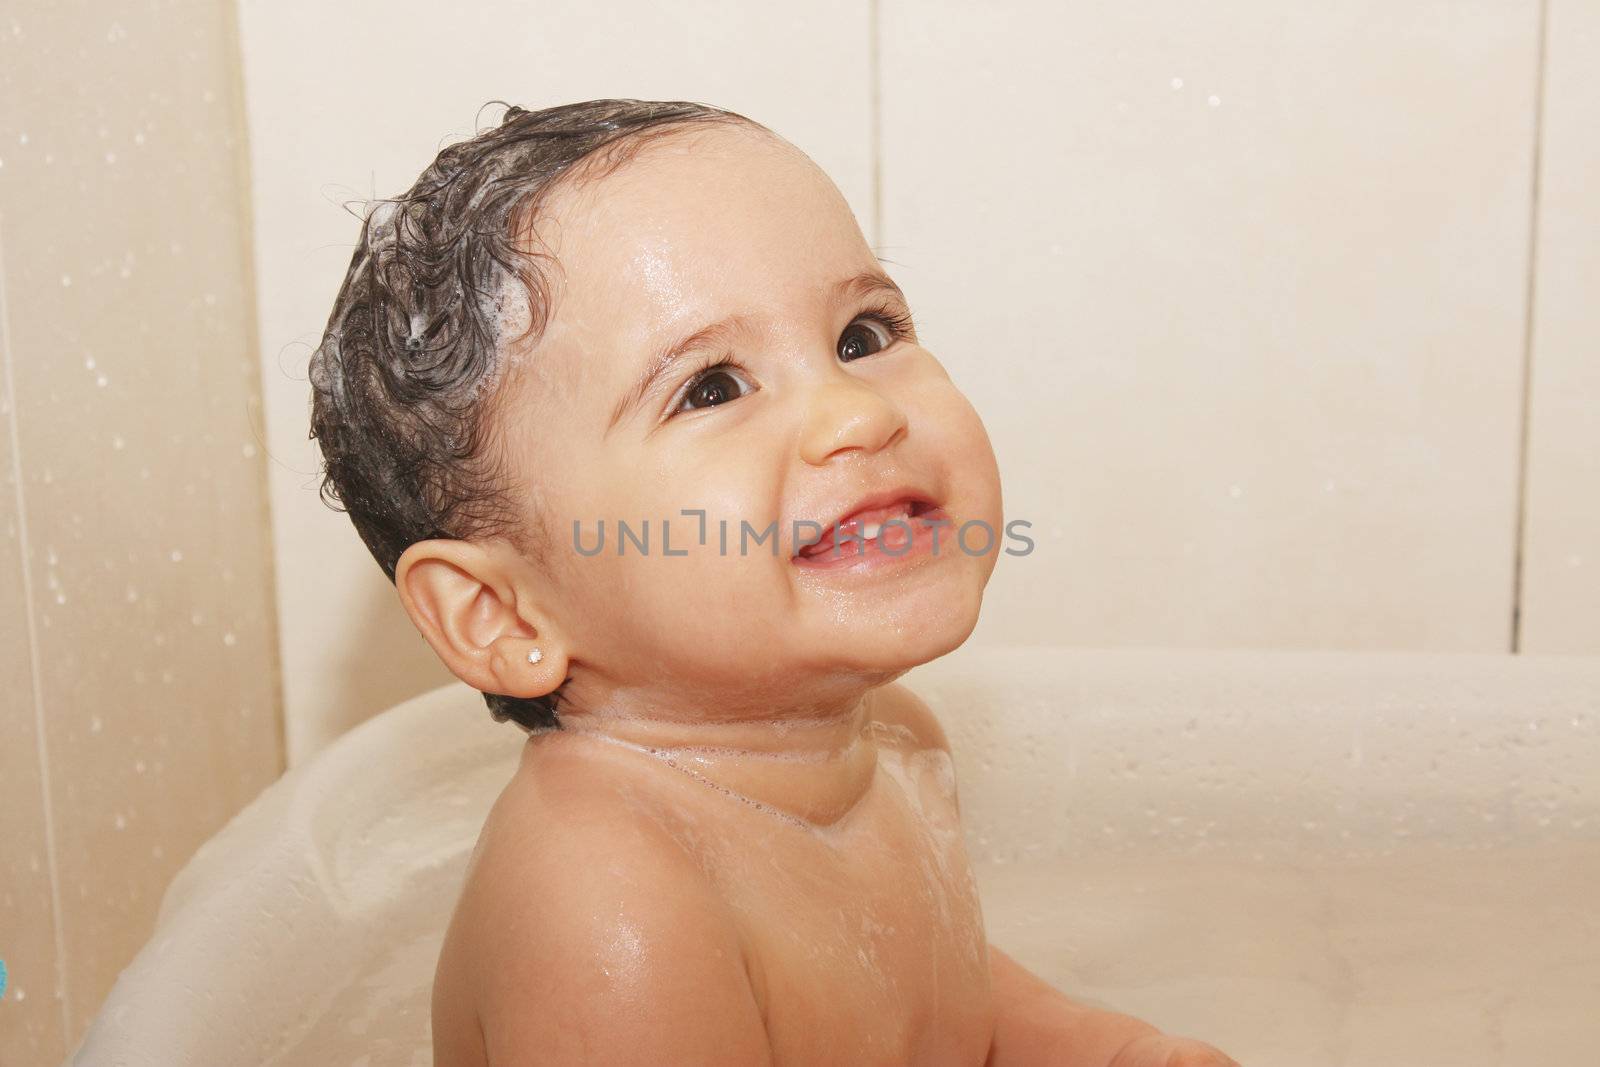 litlle baby bathes in a bathroom by dacasdo